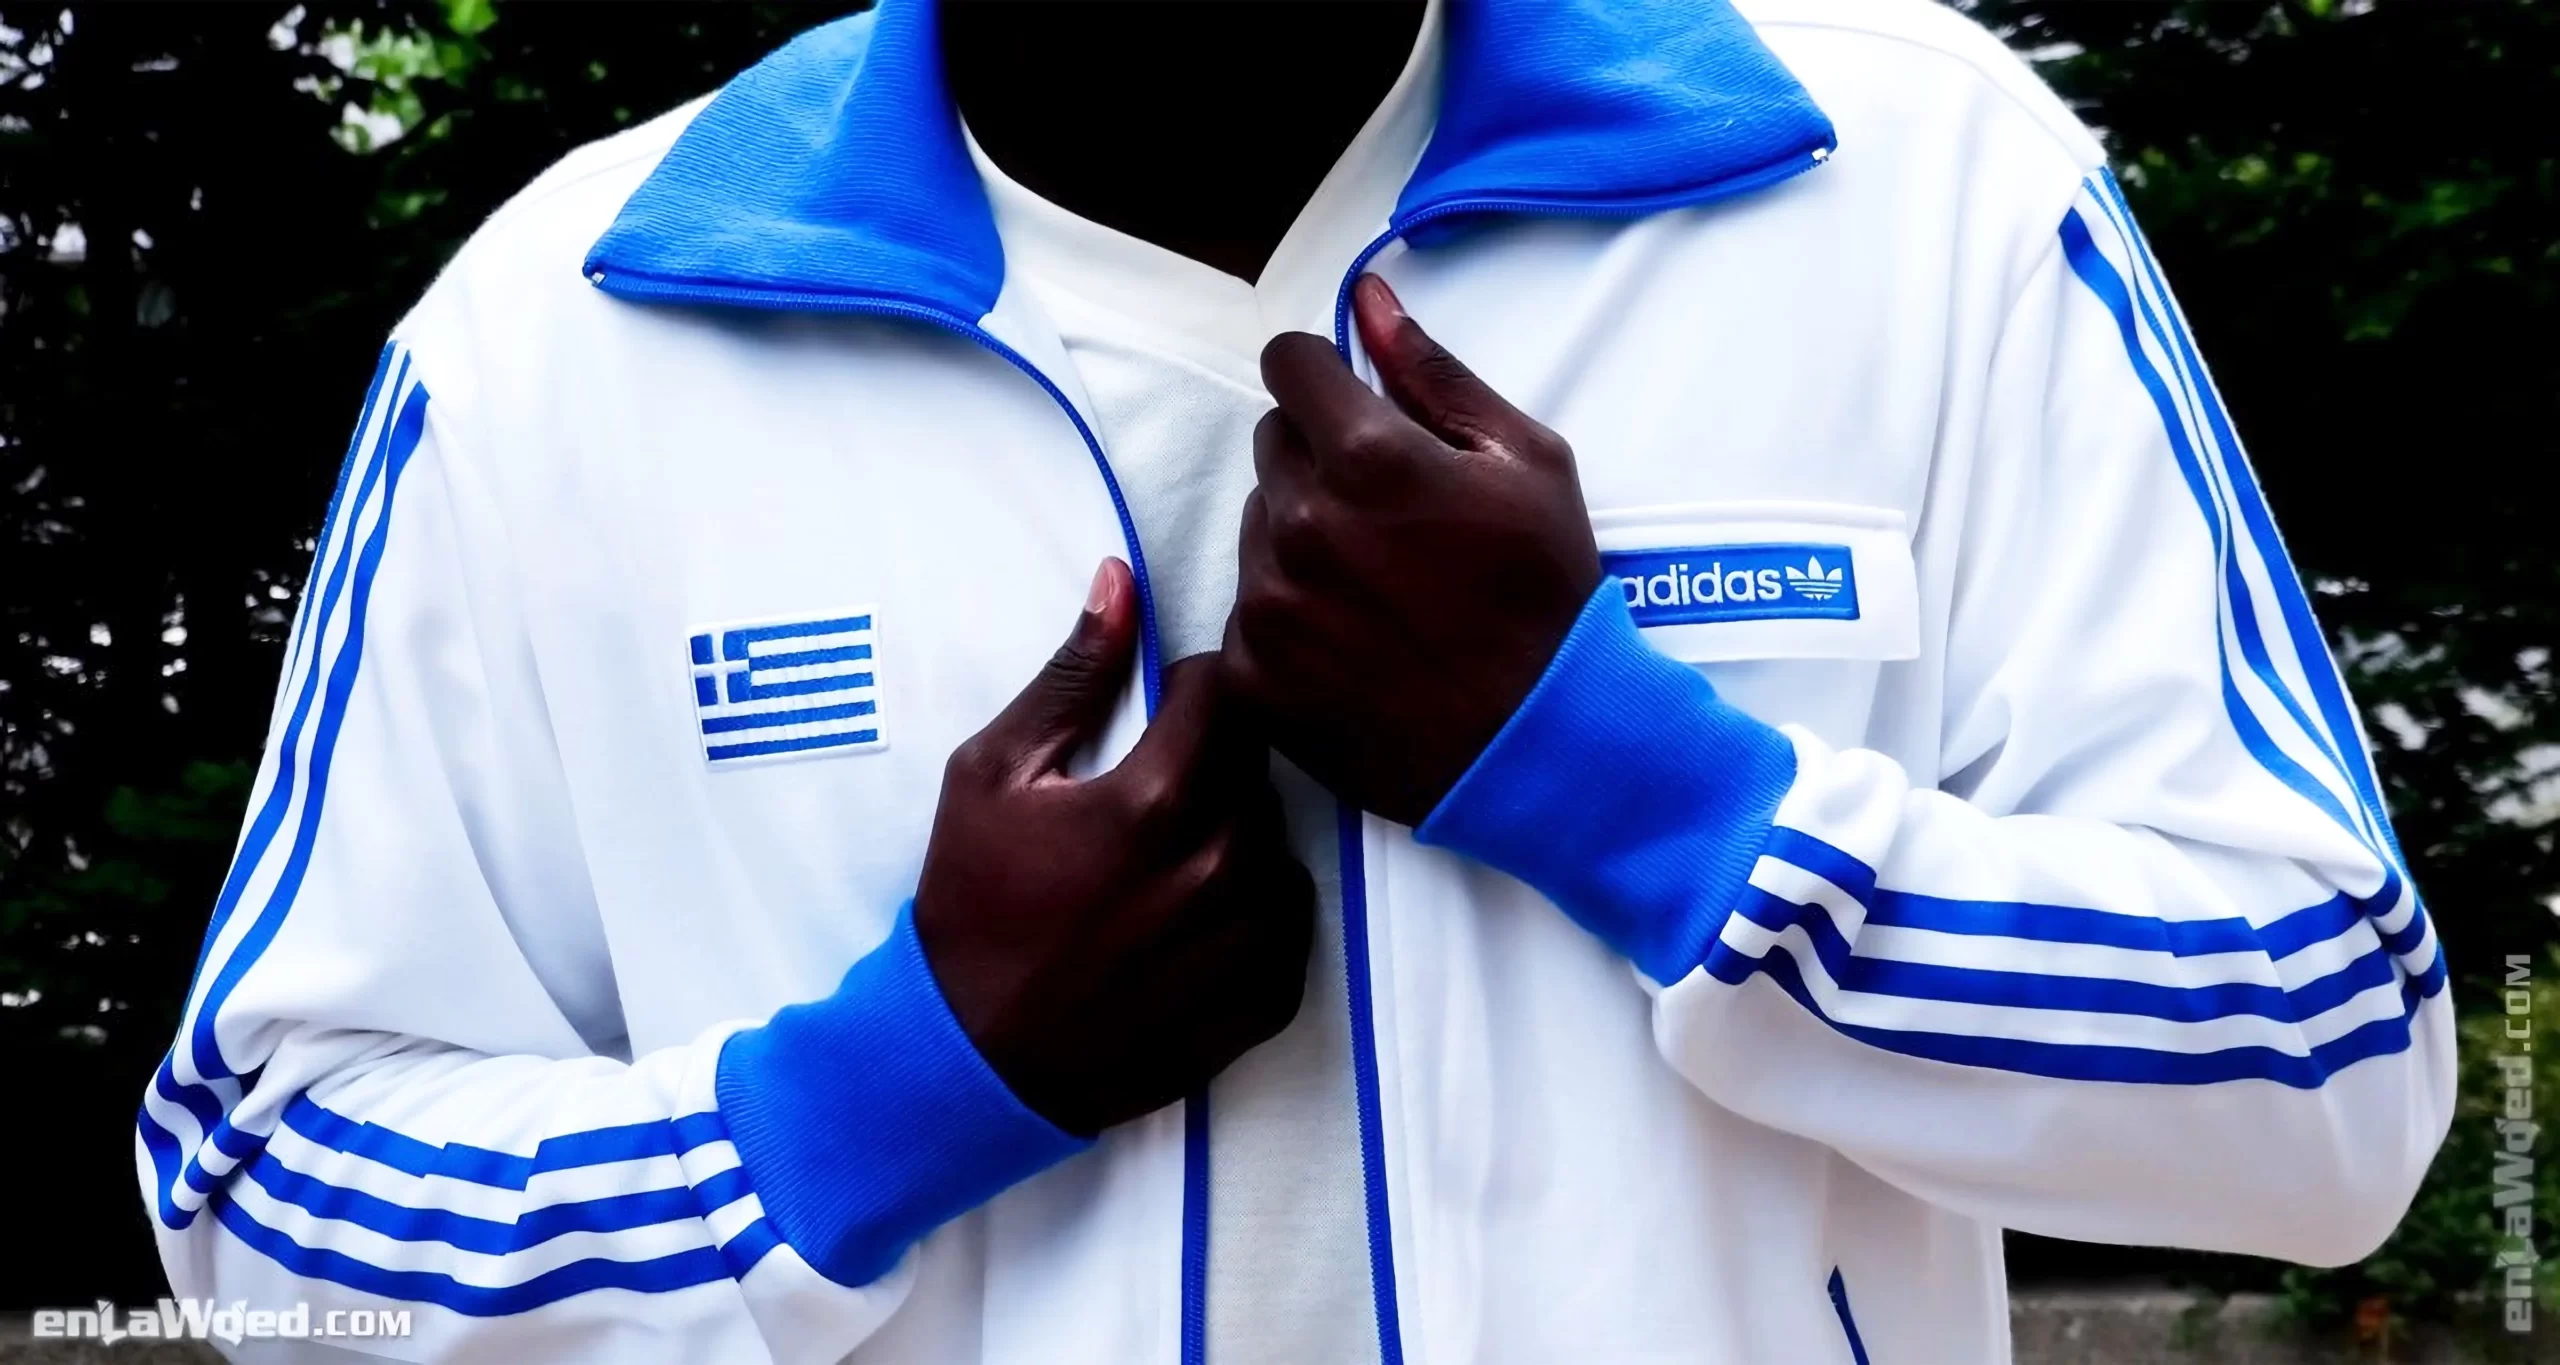 Men’s 2003 Greece Track Top by Adidas: Natural (EnLawded.com file #lmch4u302u6abozu9xu)